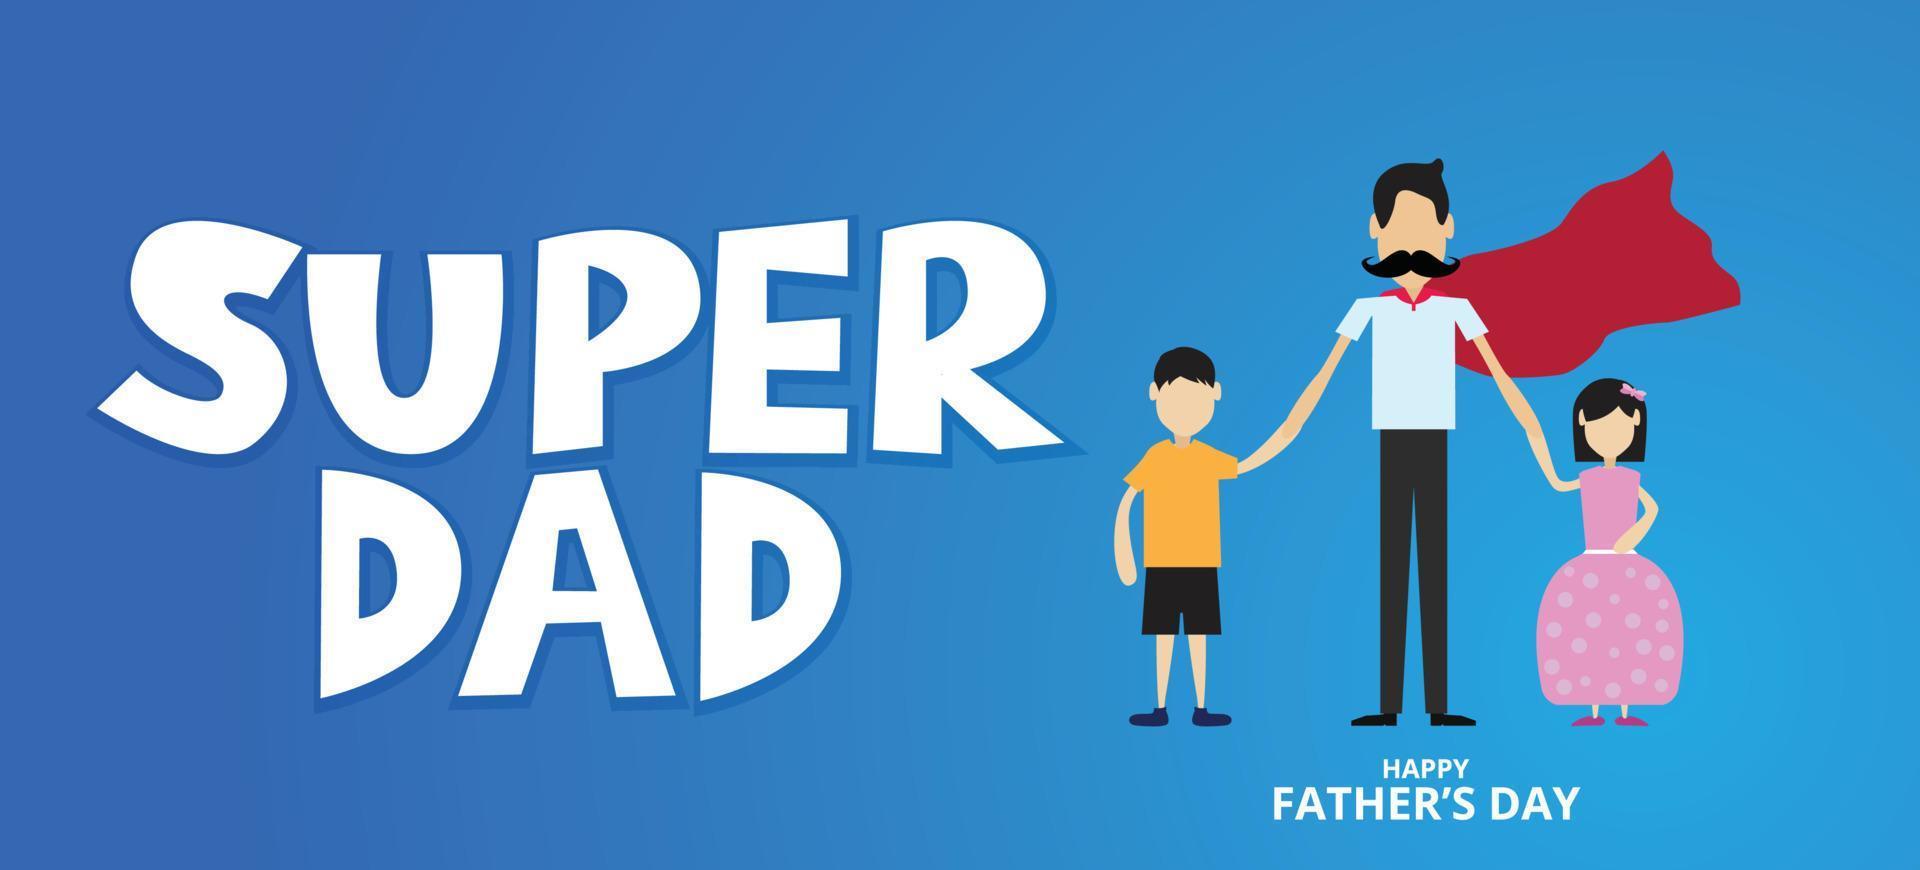 super pai, feliz dia dos pais, segurando a mão de seu filho e filha, conceito de pai de amor, ilustração vetorial vetor